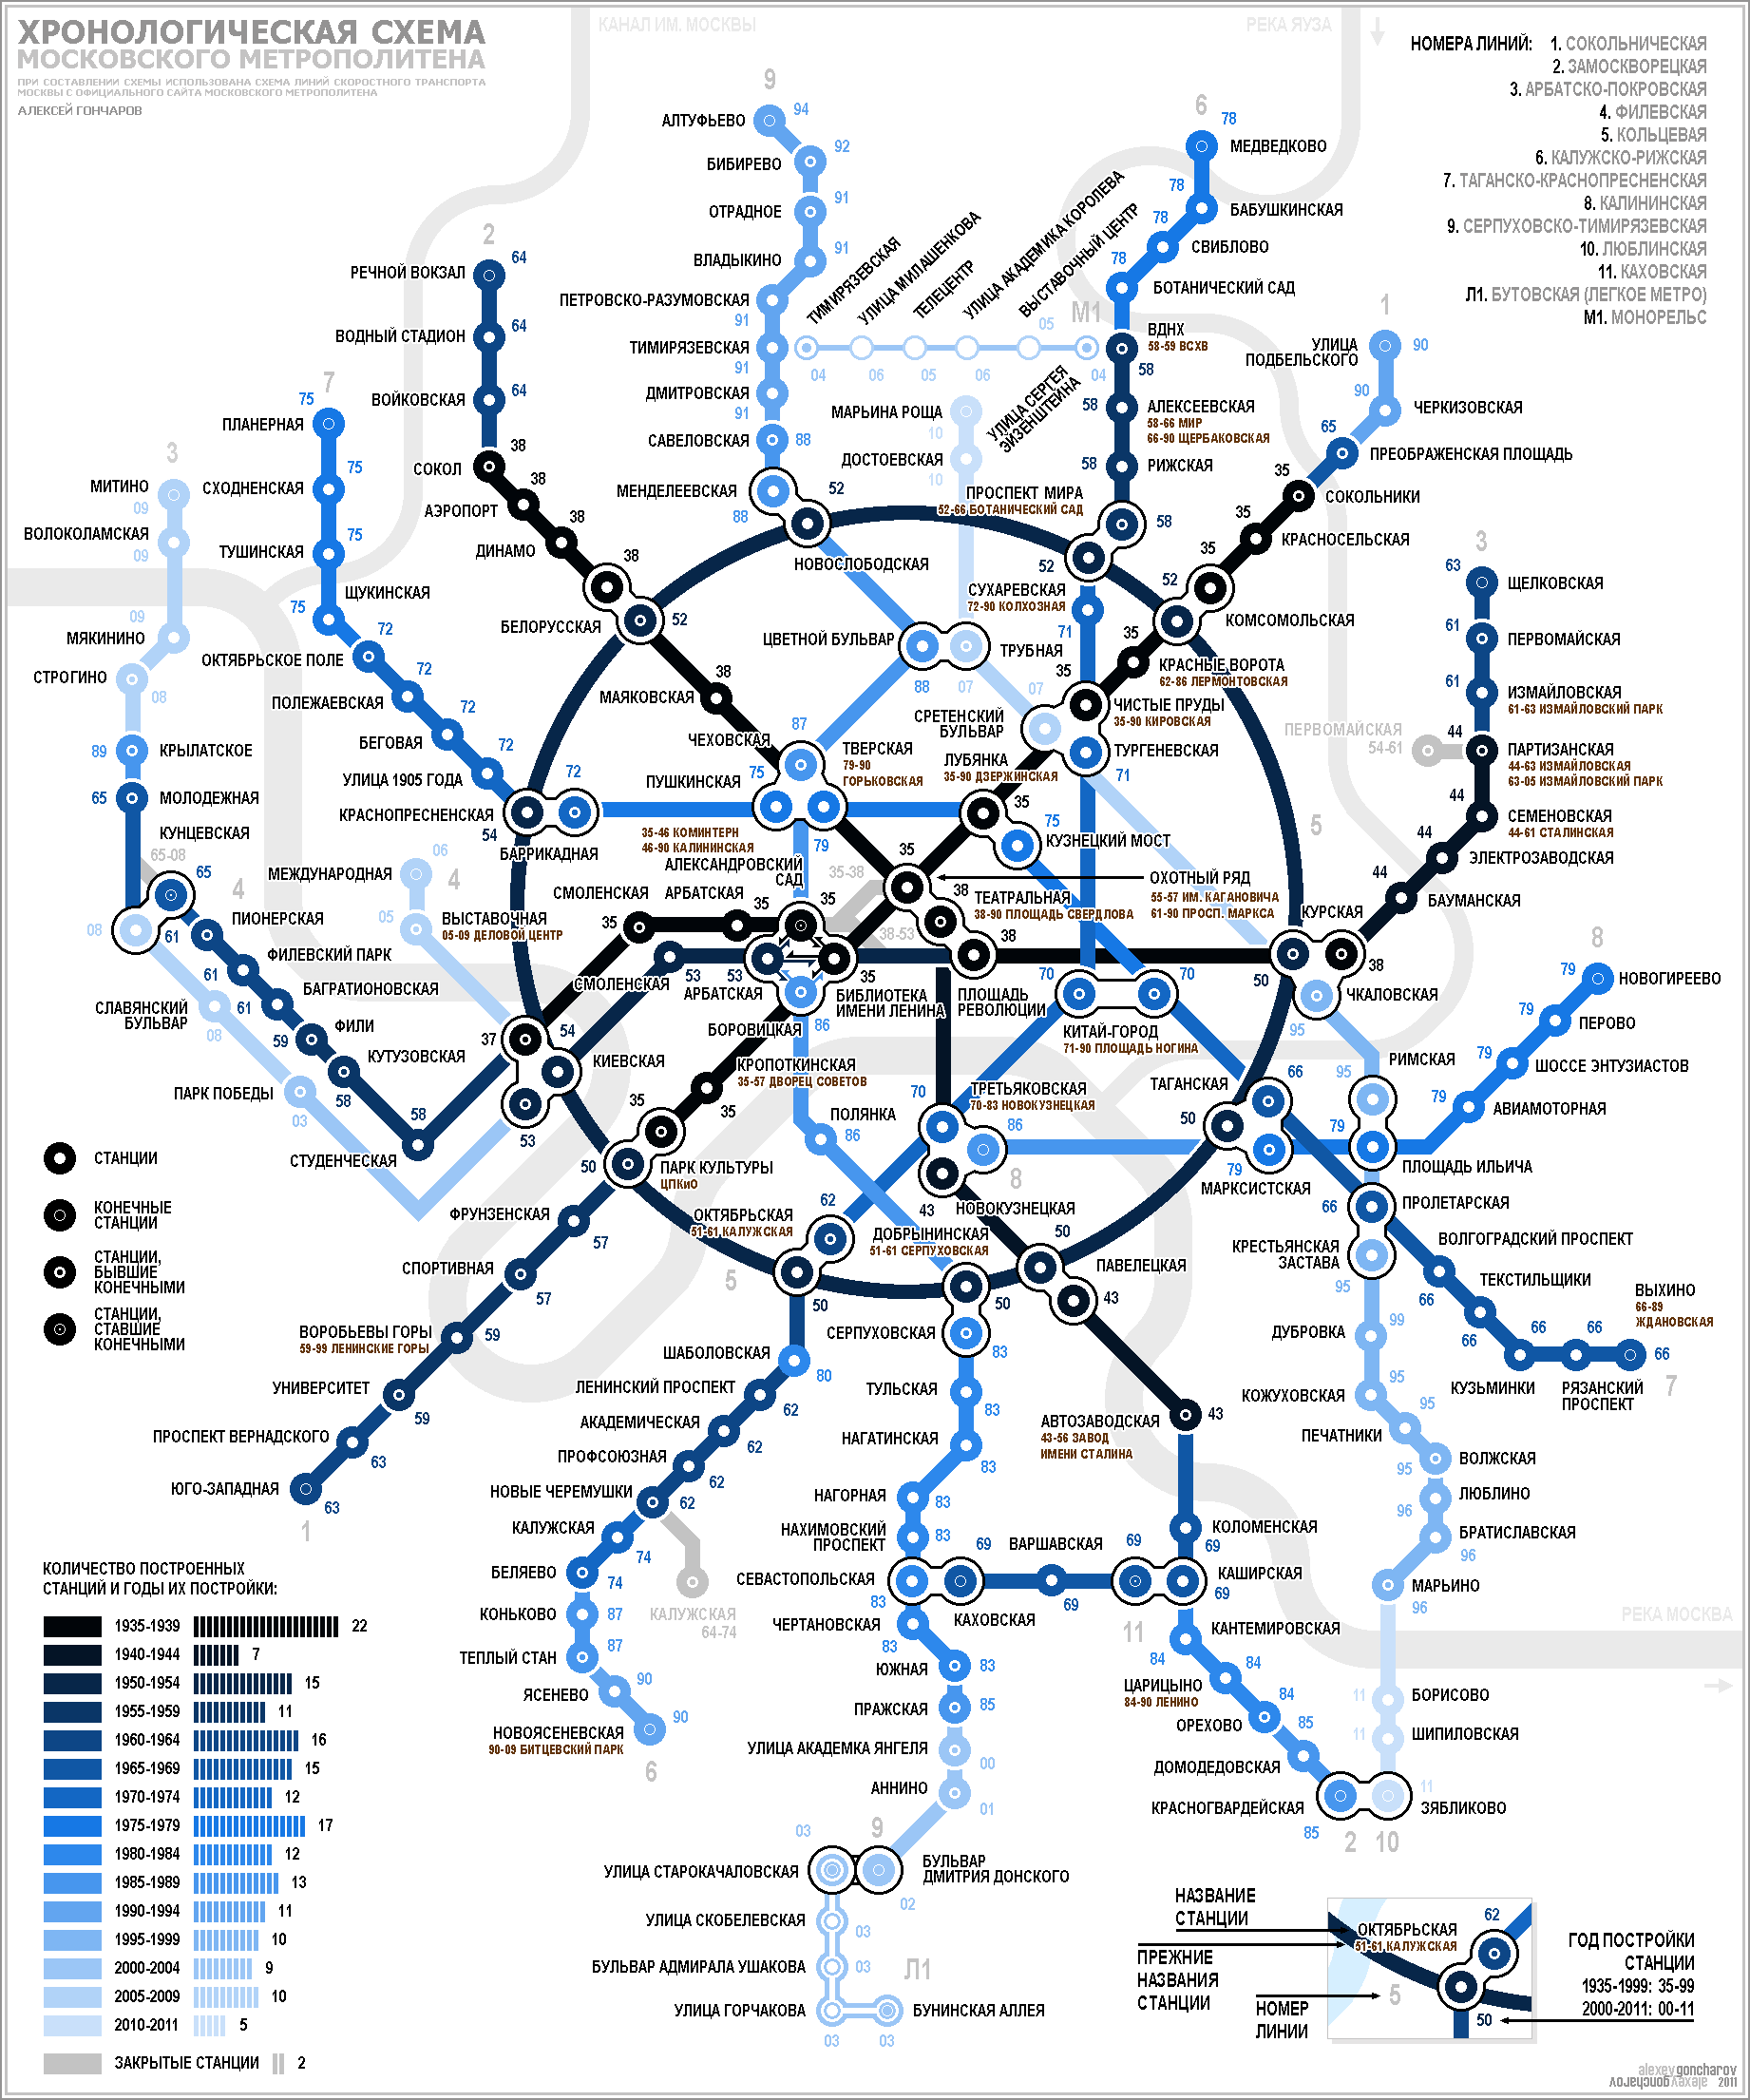 Хронологическая схема московского метрополитена